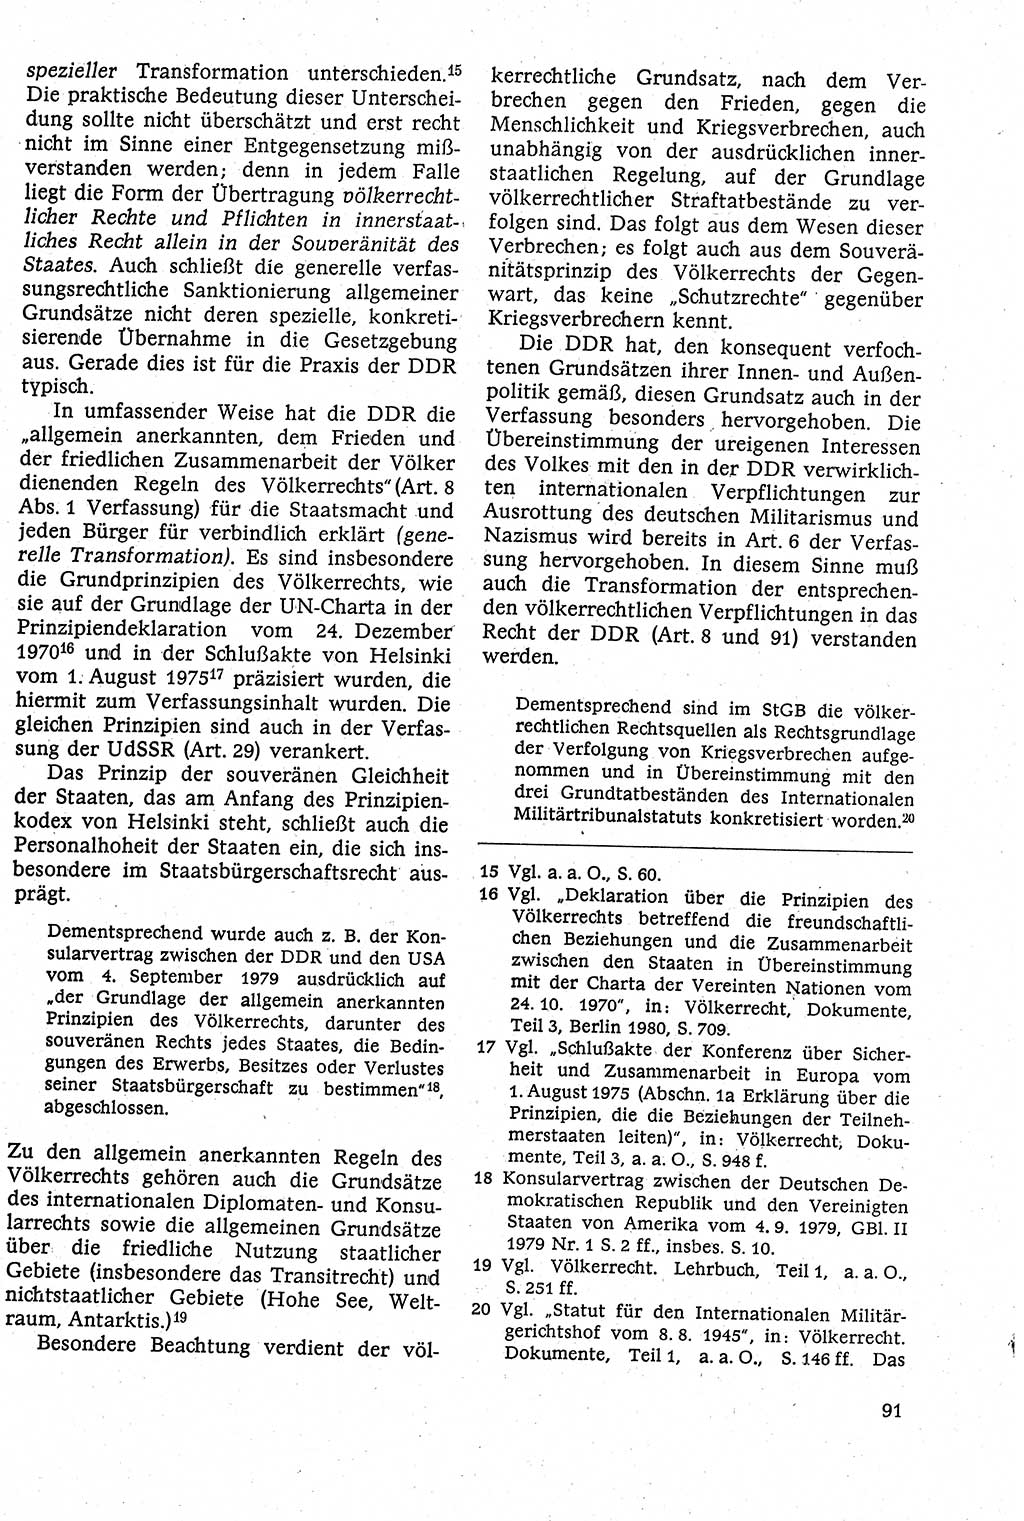 Staatsrecht der DDR [Deutsche Demokratische Republik (DDR)], Lehrbuch 1984, Seite 91 (St.-R. DDR Lb. 1984, S. 91)